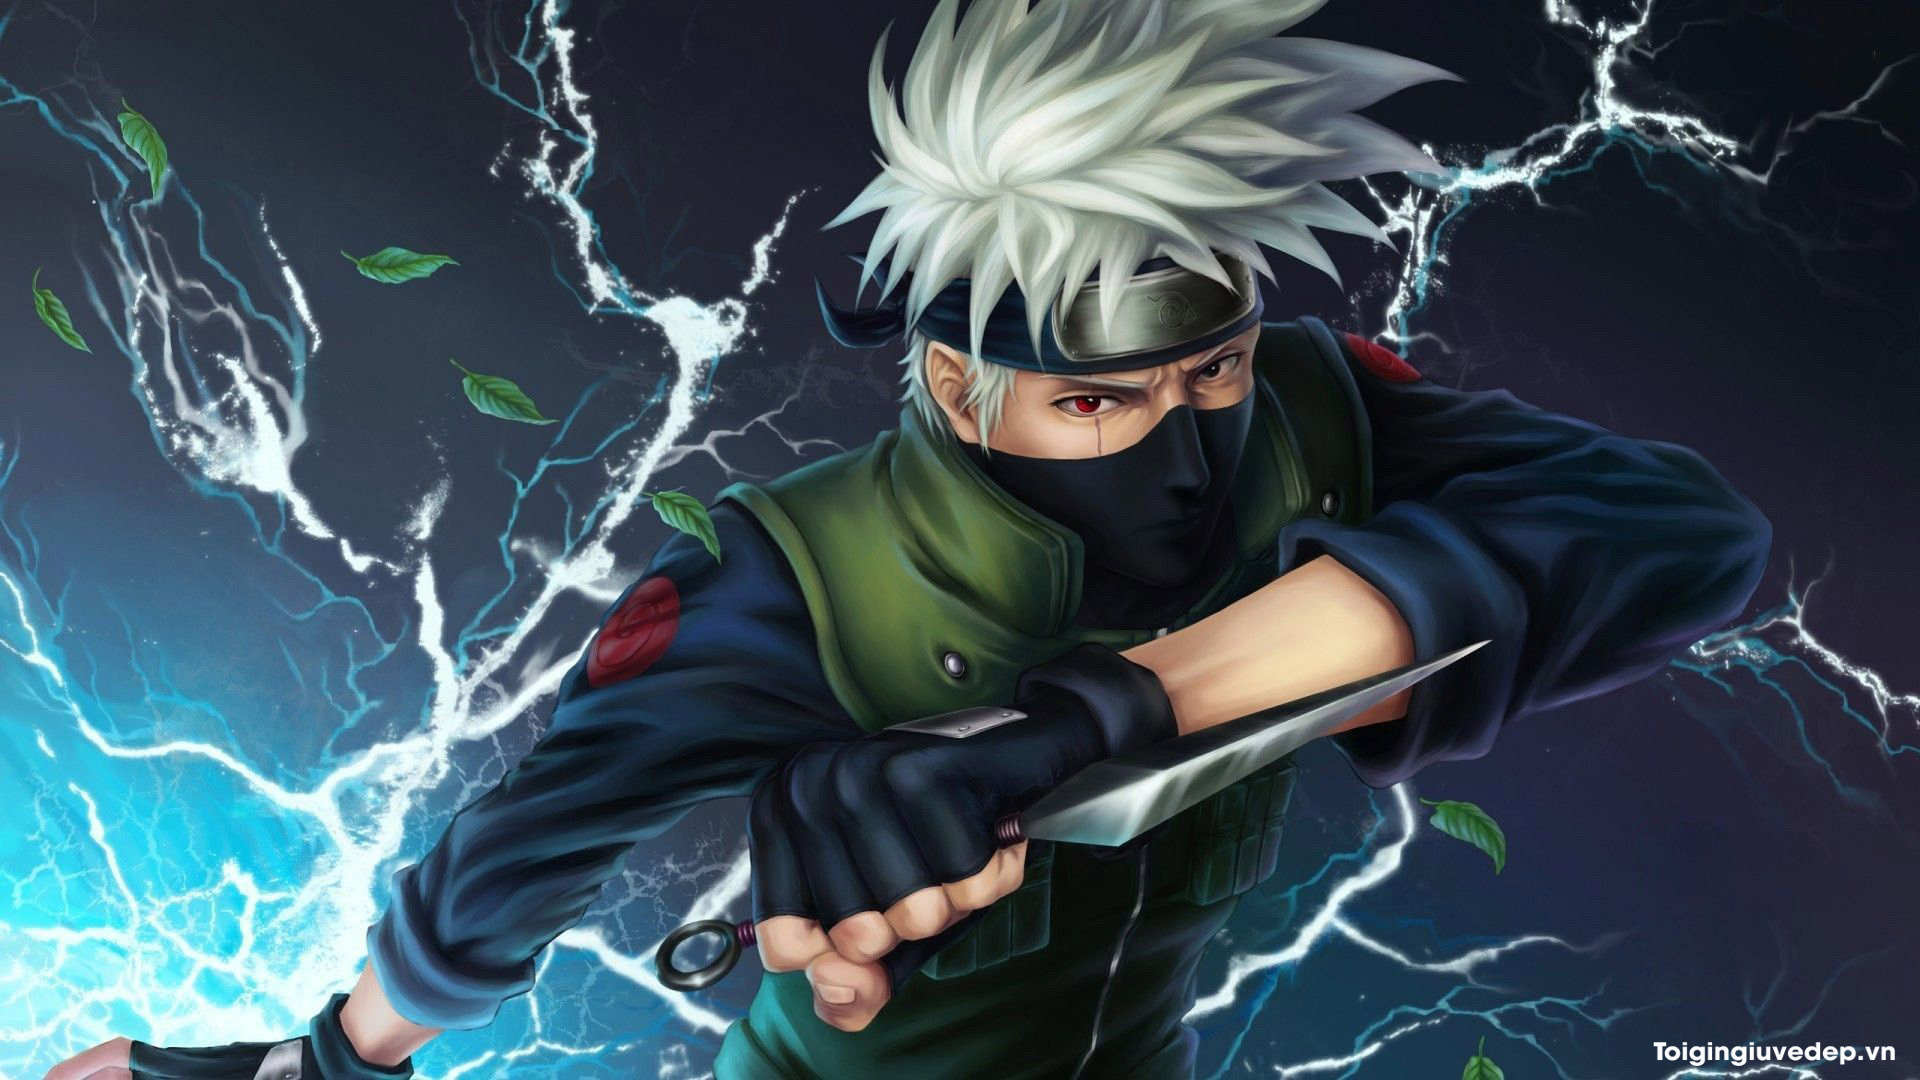 Ninja sao chép Hatake Kakashi hiện lên cực chất trong bộ ảnh fanart